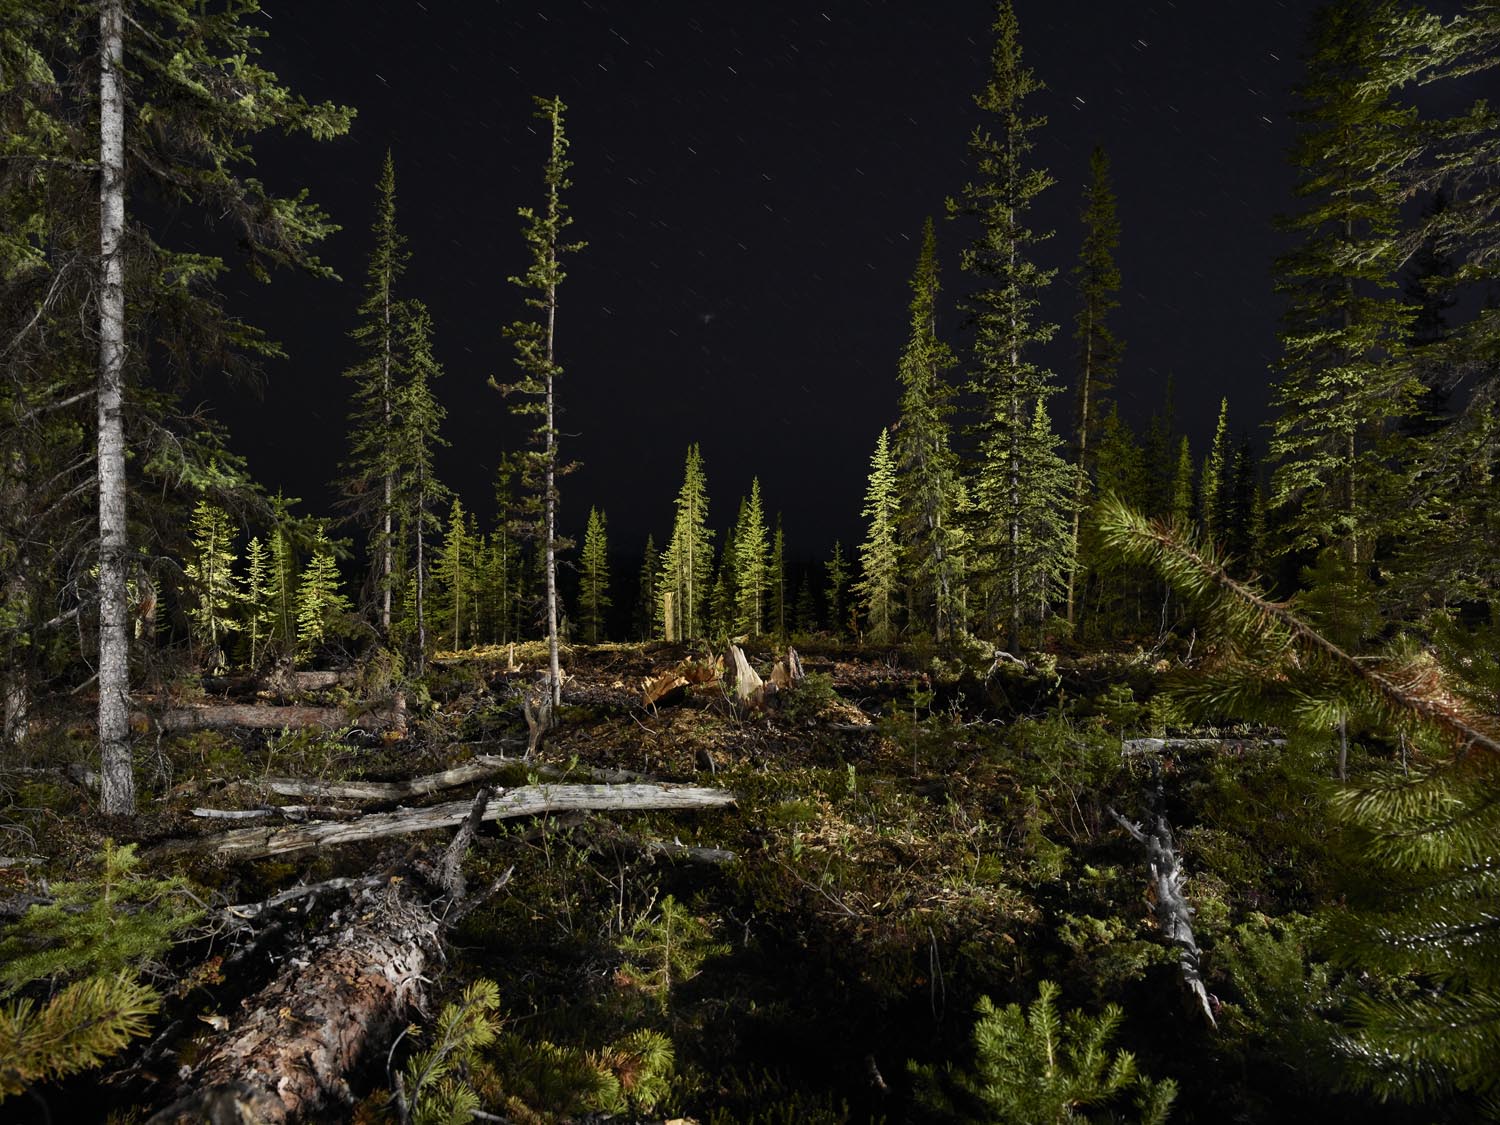 La fotoperiodista, Rita Leistner, realiza una inmersión total al mundo de los plantadores de árboles en zonas de reforestación del oeste canadiense.